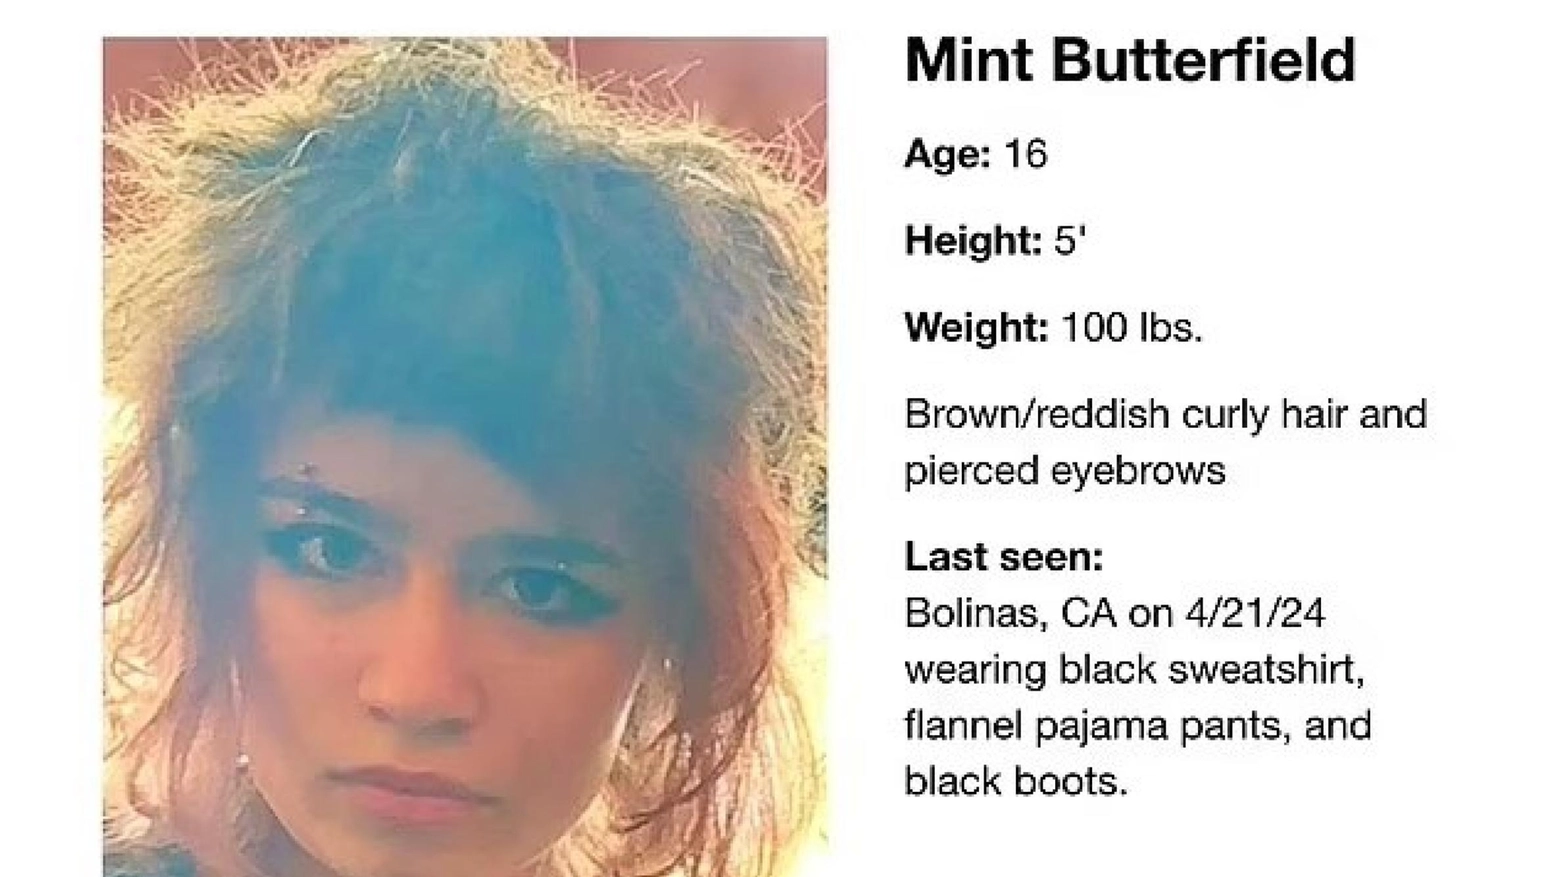 La 16enne Mint Butterfield è stata avvistata a Bolinas, in California. Le autorità temono che si trovi in un quartiere malfamato di San Francisco